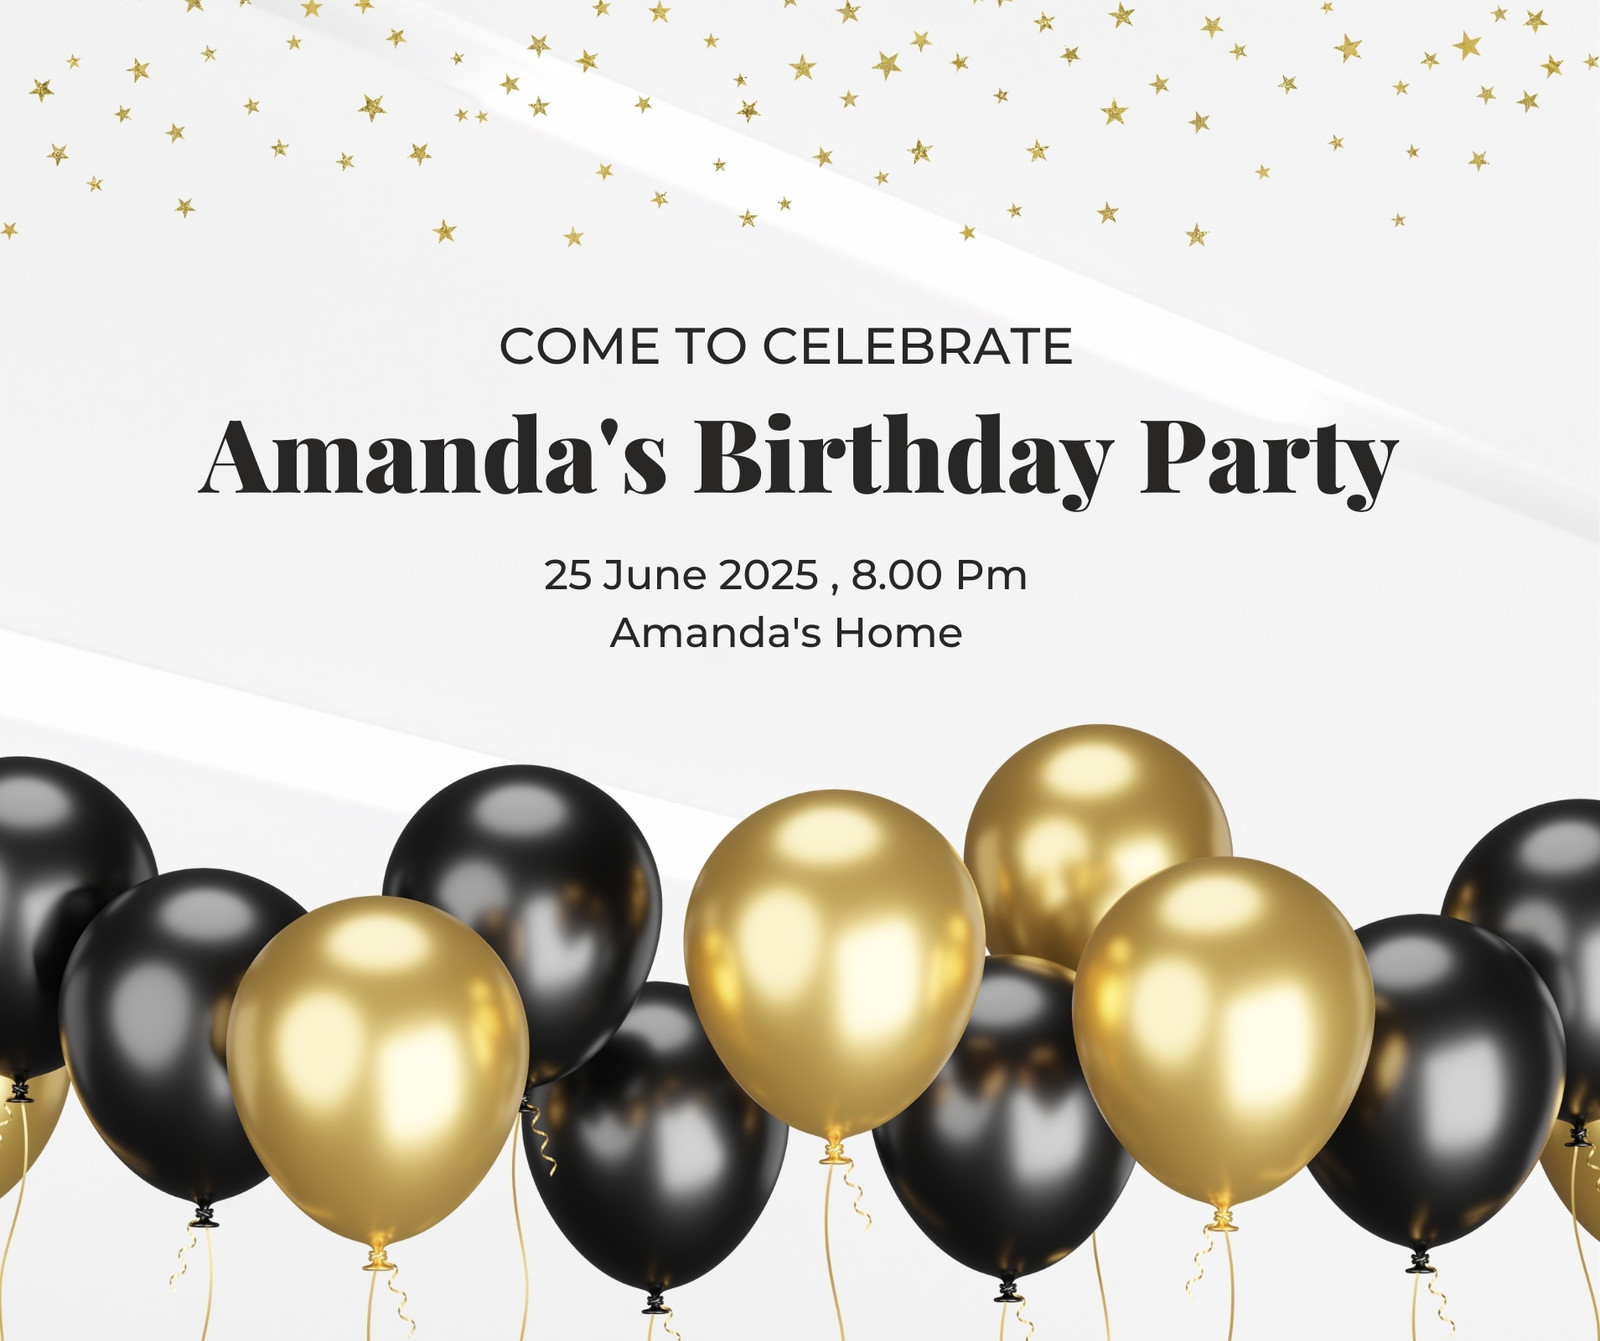 Bạn muốn tạo ra những bài đăng sinh nhật độc đáo và tùy chỉnh cho mình? Chúng tôi có các mẫu thiết kế bài đăng Facebook miễn phí và tùy chỉnh cho bạn lựa chọn, giúp bạn dễ dàng tổ chức các bữa tiệc tuyệt vời hơn.